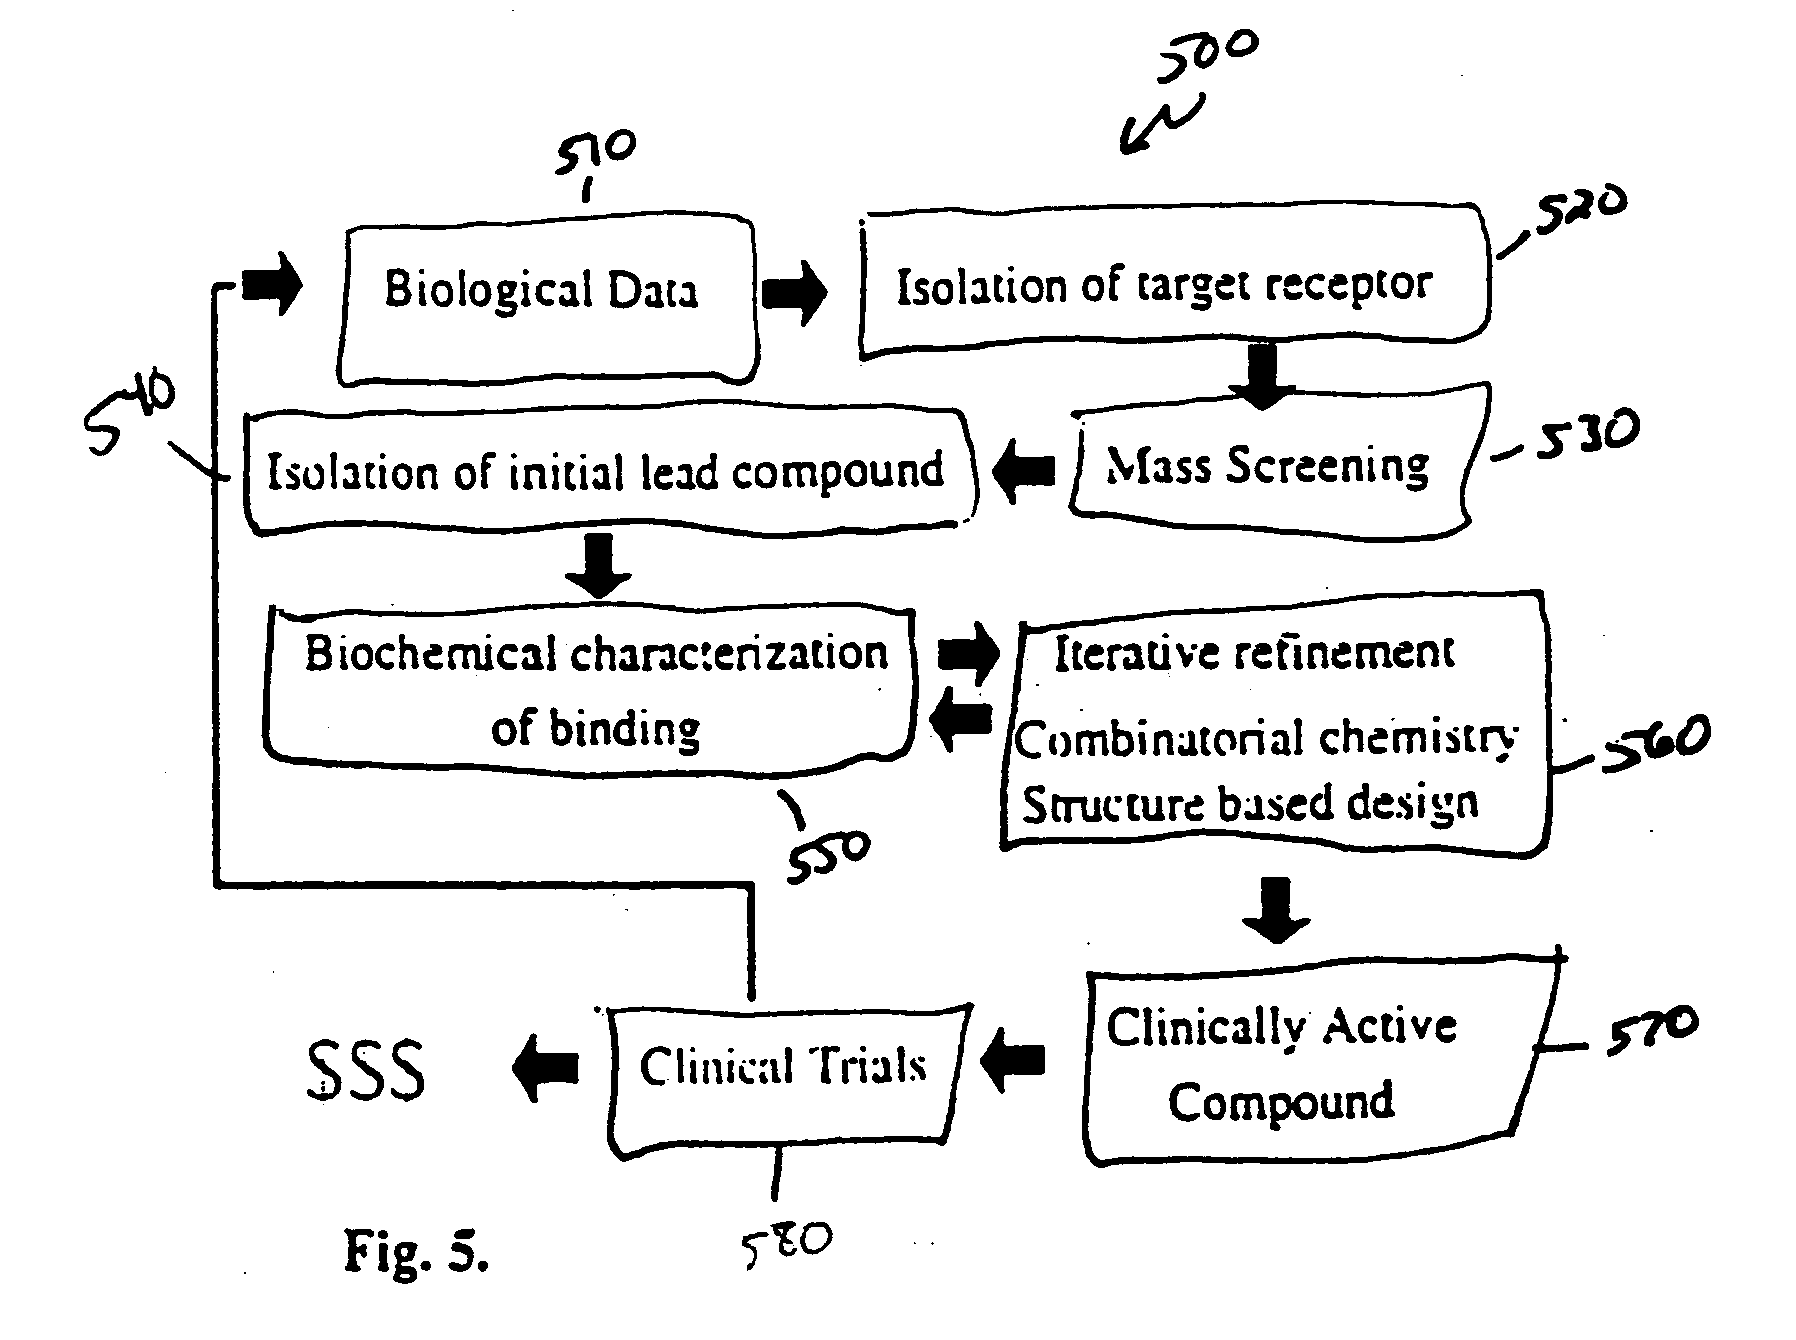 System and method for improved computer drug design